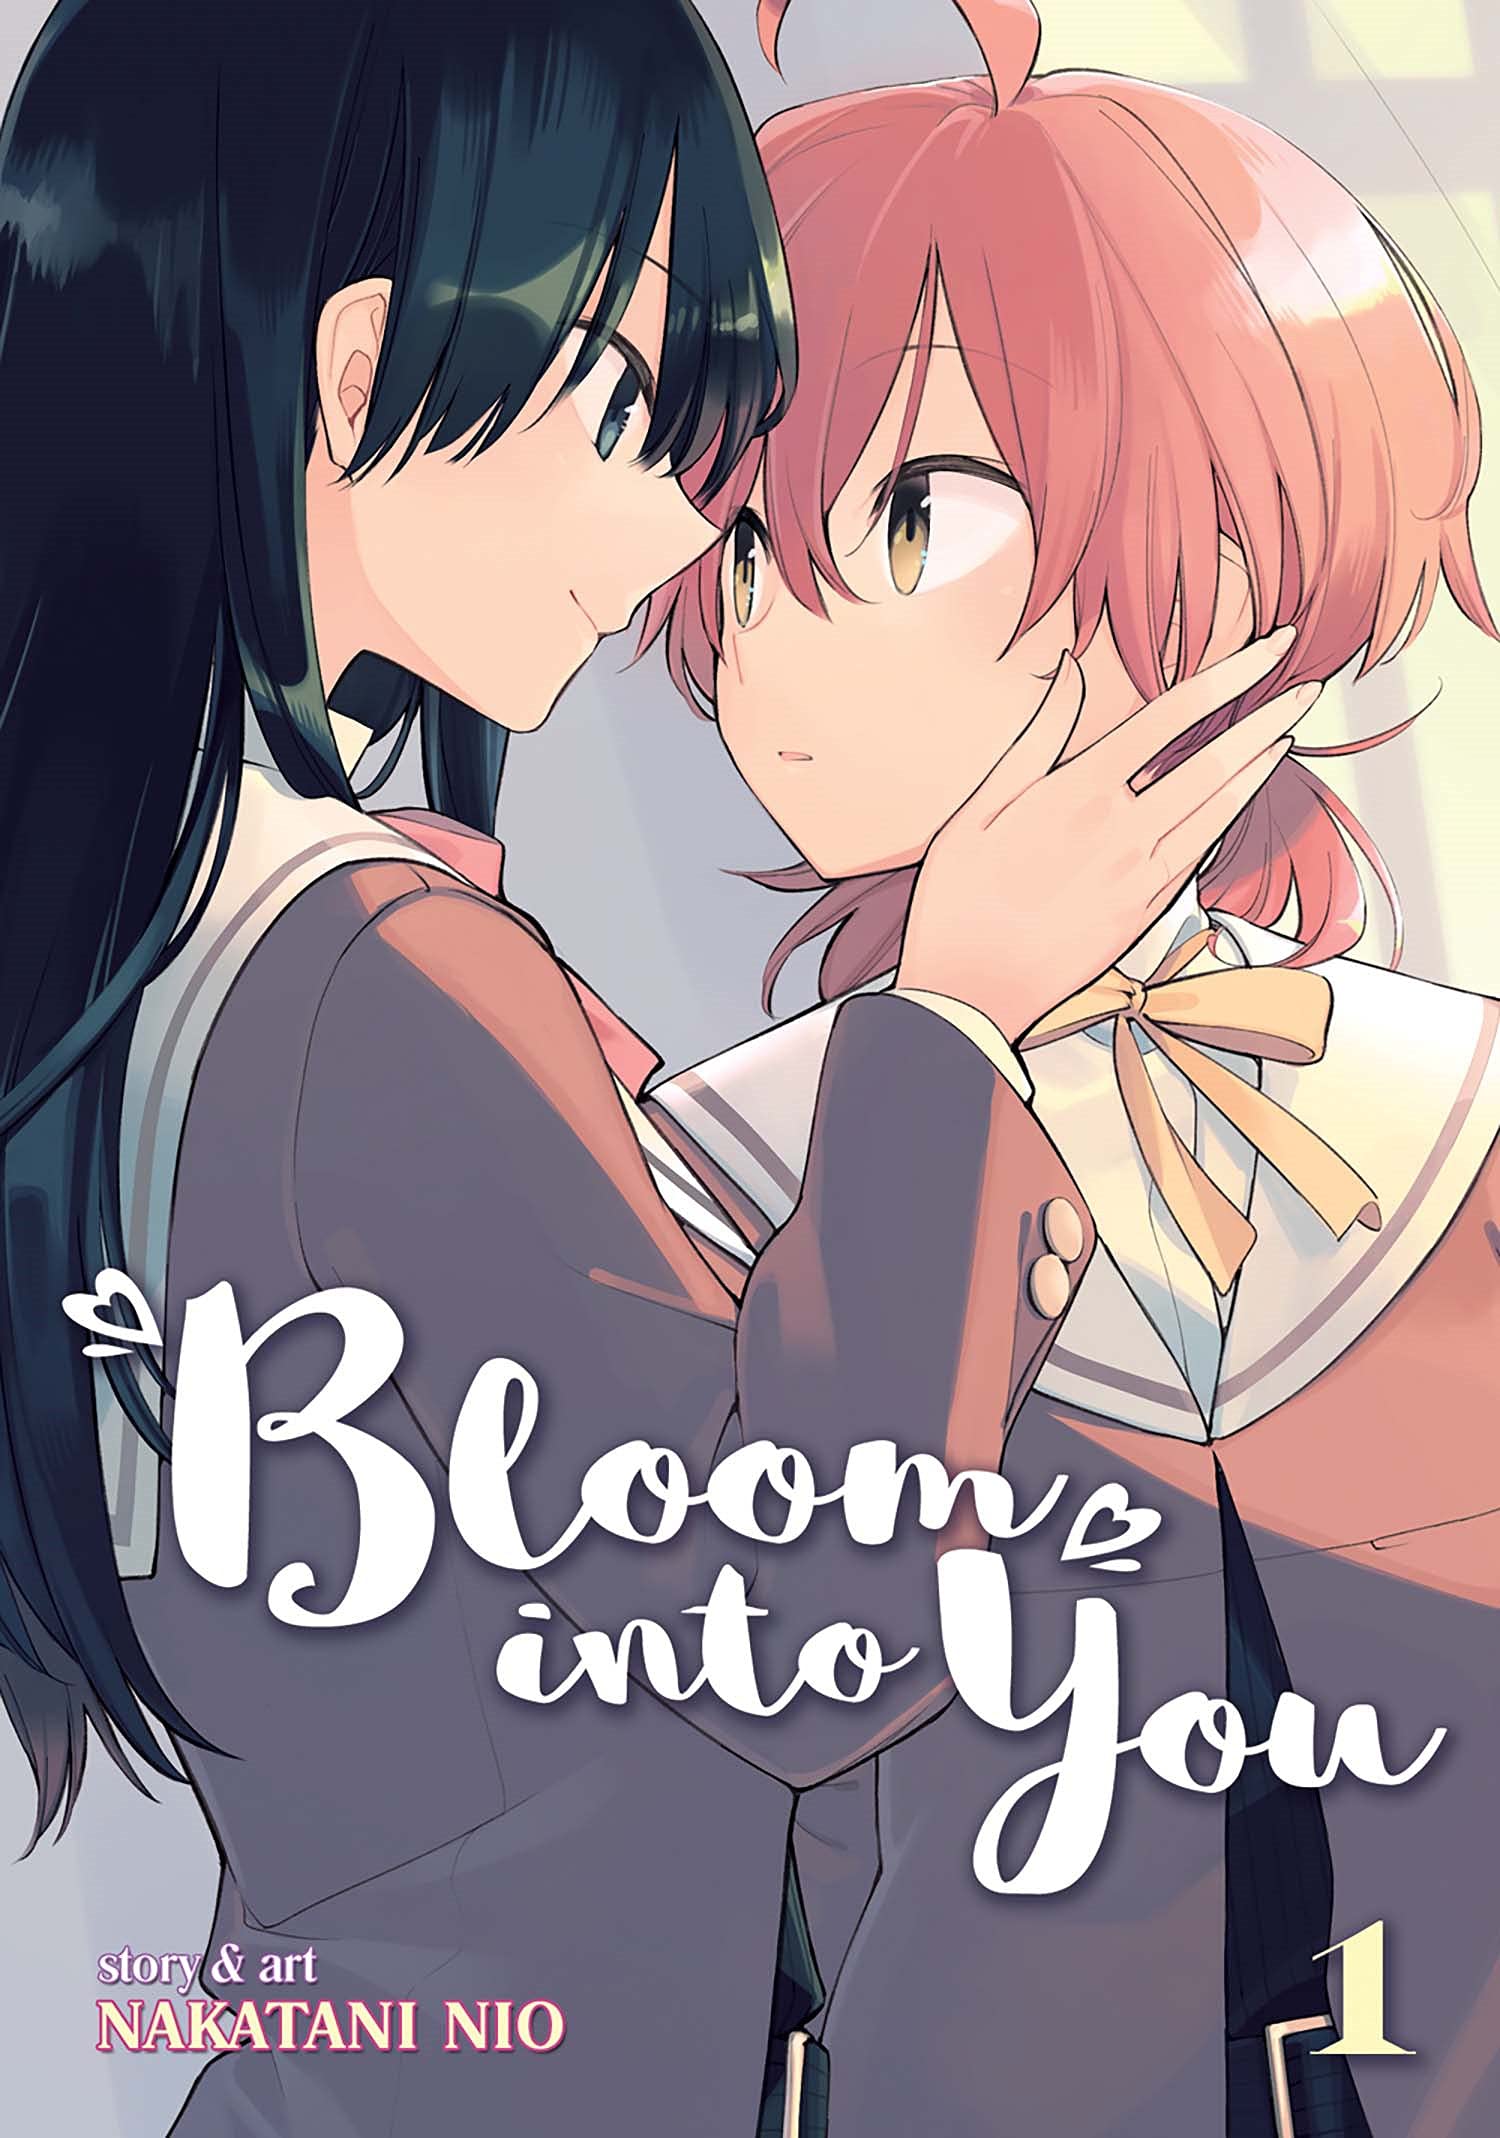 Yagate Kimi ni Naru (Bloom into You)